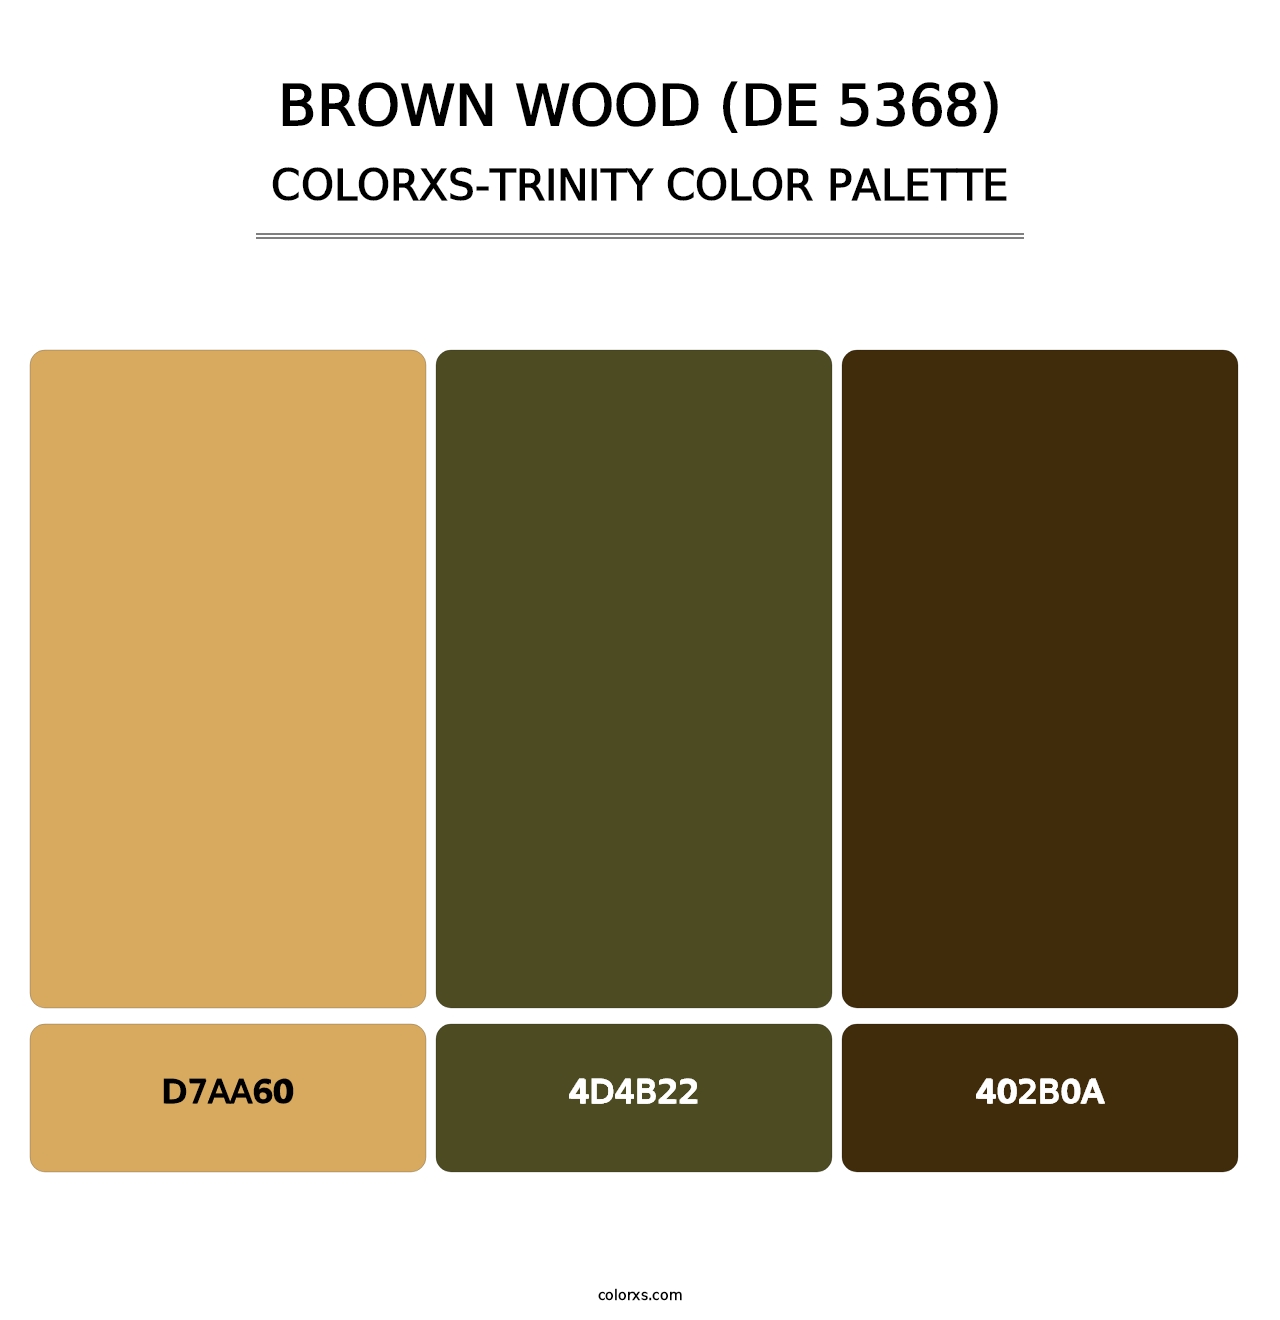 Brown Wood (DE 5368) - Colorxs Trinity Palette